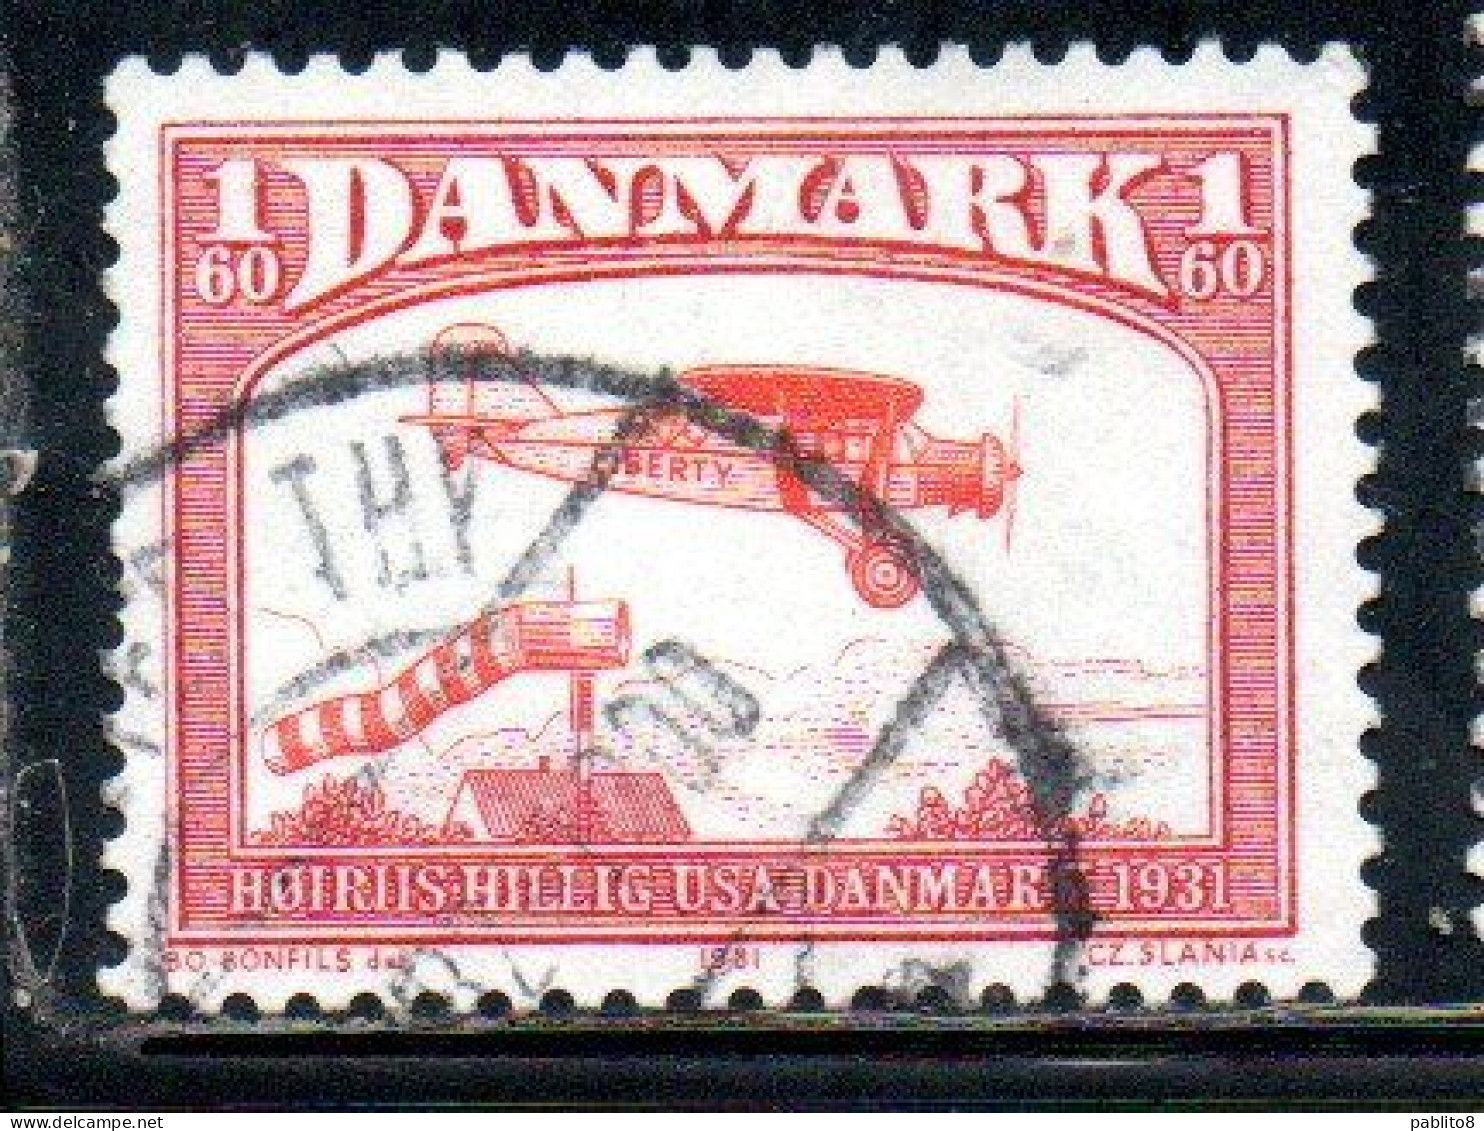 DANEMARK DANMARK DENMARK DANIMARCA 1981 BELLANCA J-300  1931 1.60k USED USATO OBLITERE - Oblitérés